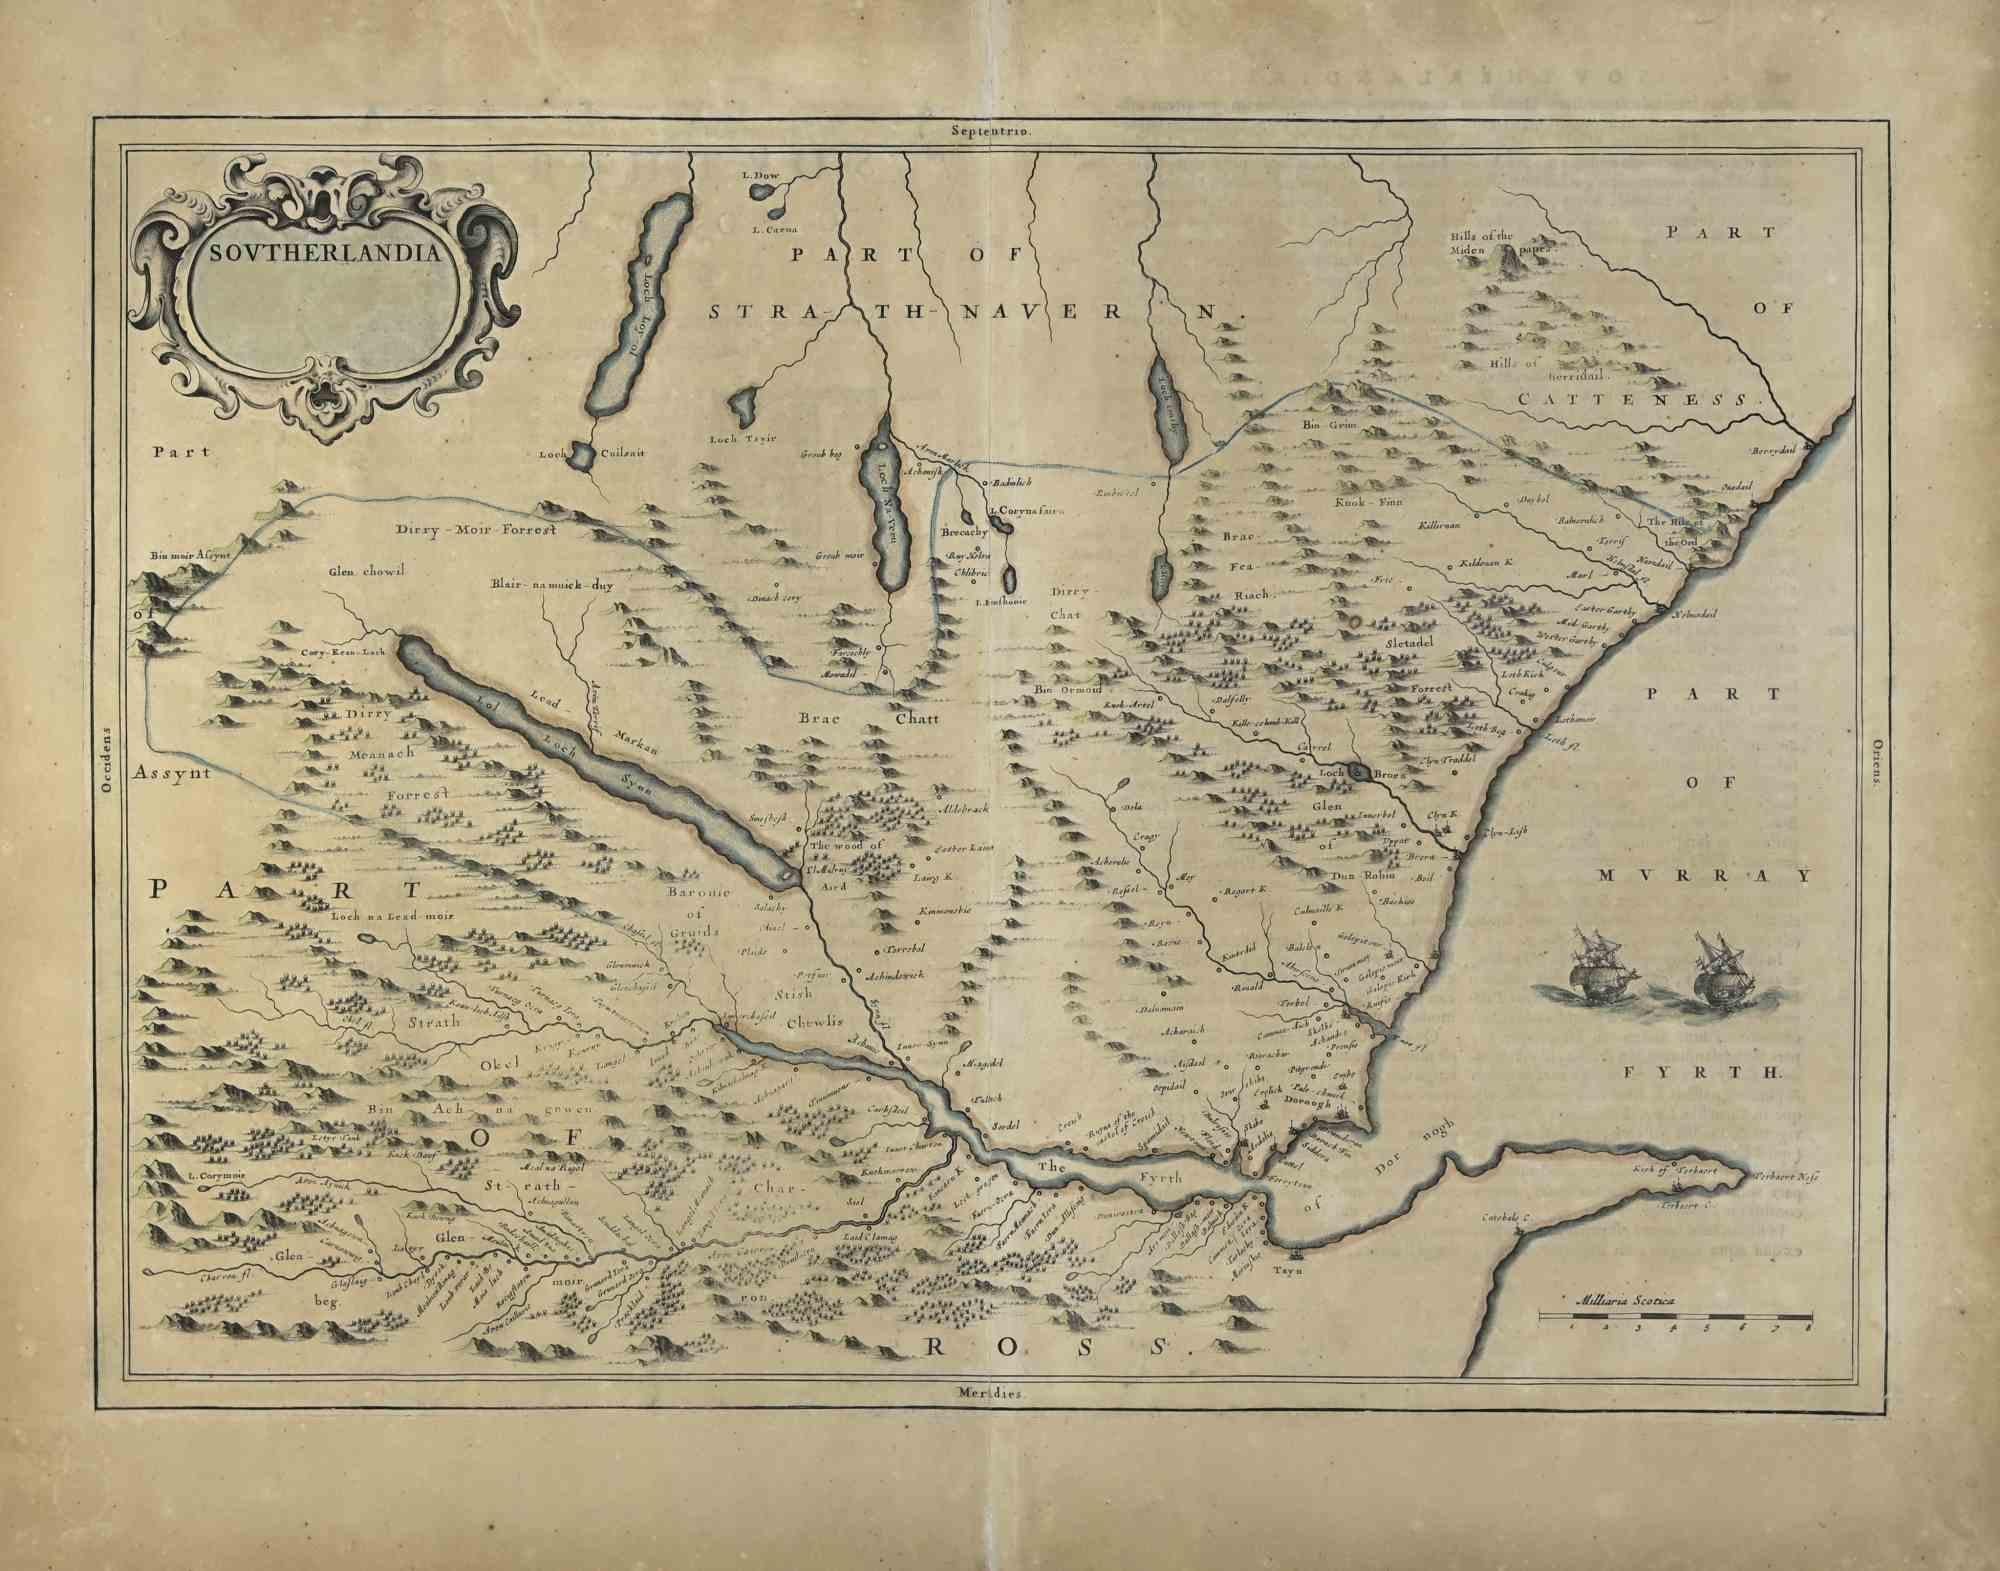 La carte de Southerlandia est une carte ancienne réalisée en 1650 par Johannes Janssonius (1588-1664).

La carte est une gravure à l'eau-forte coloriée à la main, avec aquarelle au même moment.

Bonnes conditions.

De Atlantis majoris quinta pars,